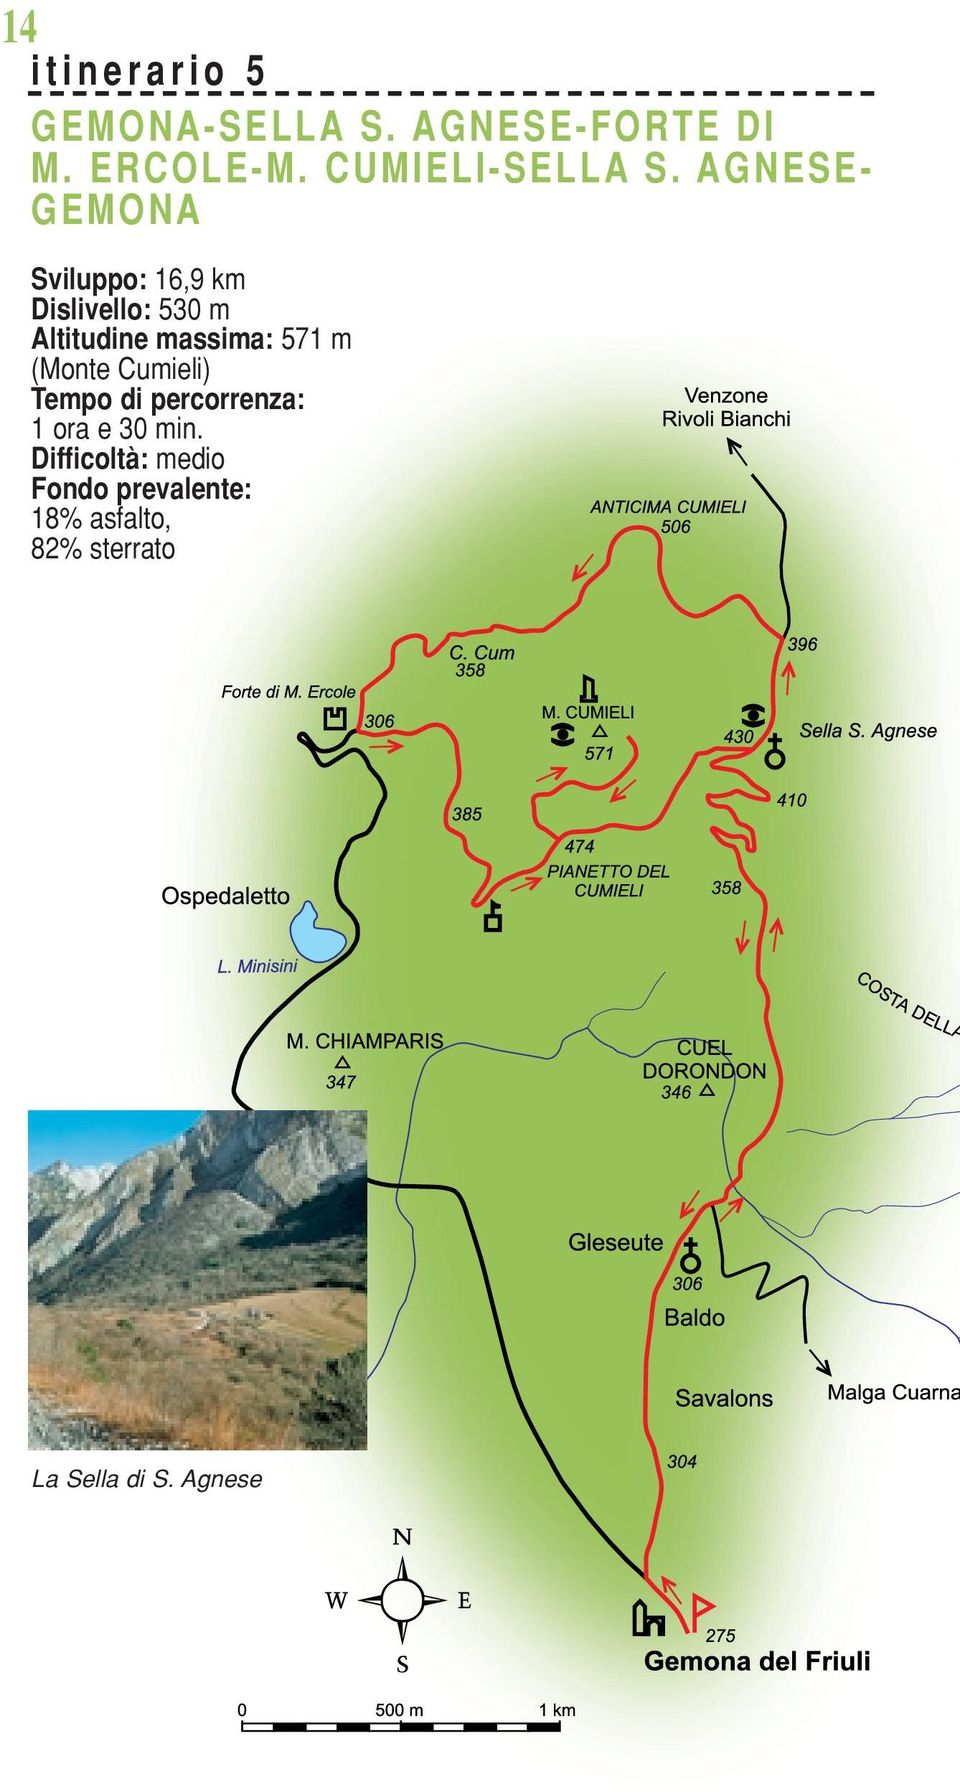 AGNESE- GEMONA Sviluppo: 16,9 km Dislivello: 530 m Altitudine massima: